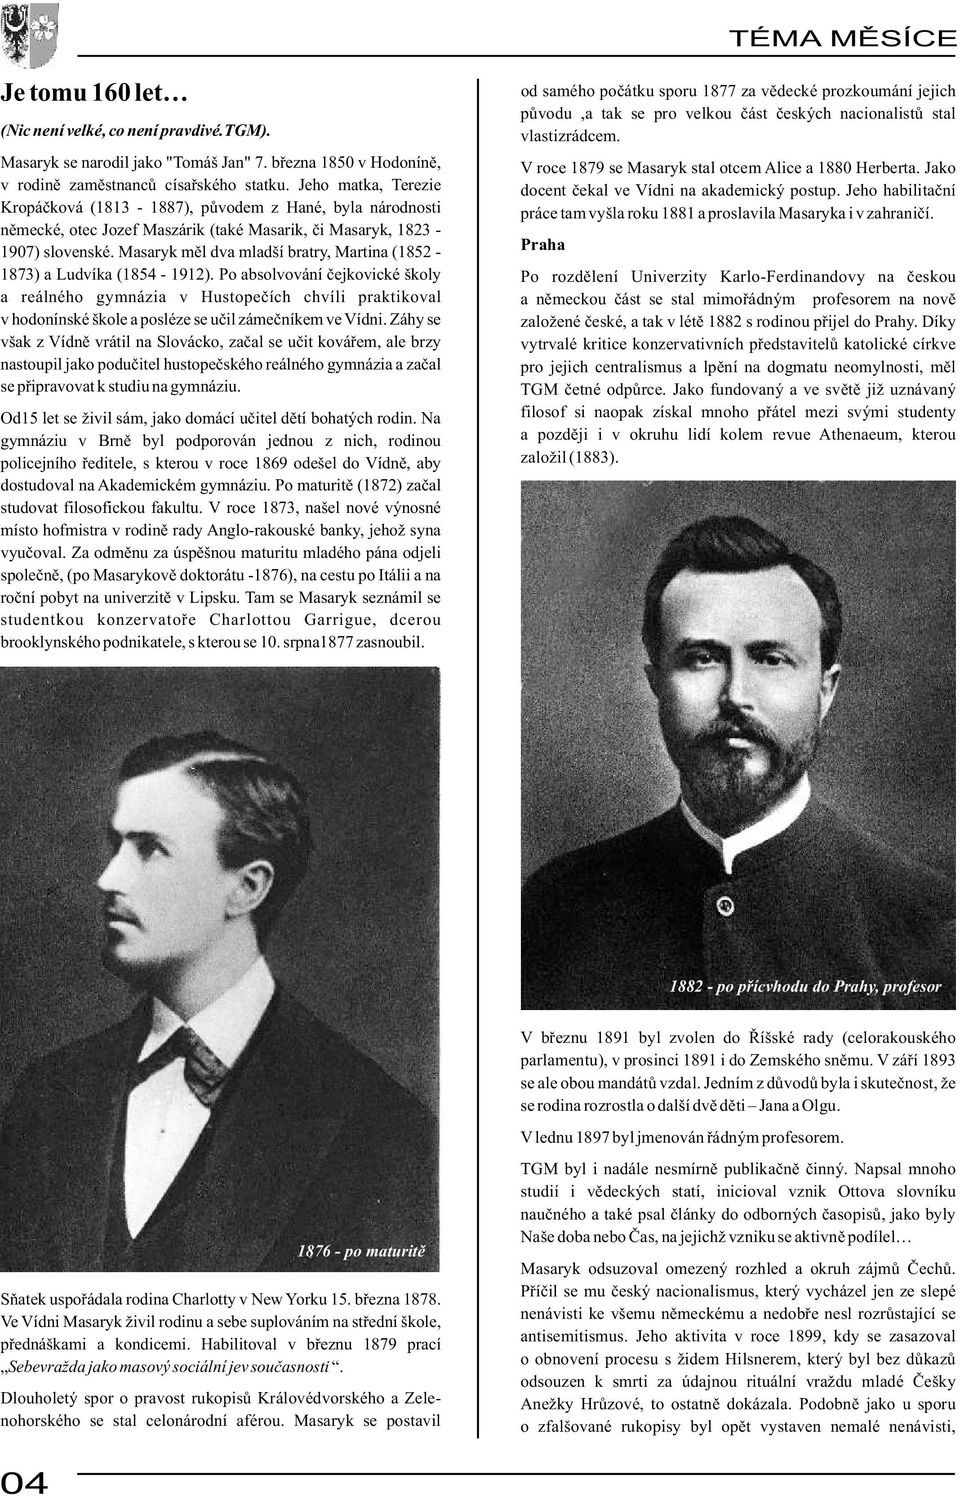 Masaryk měl dva mladší bratry, Martina (1852-1873) a Ludvíka (1854-1912).